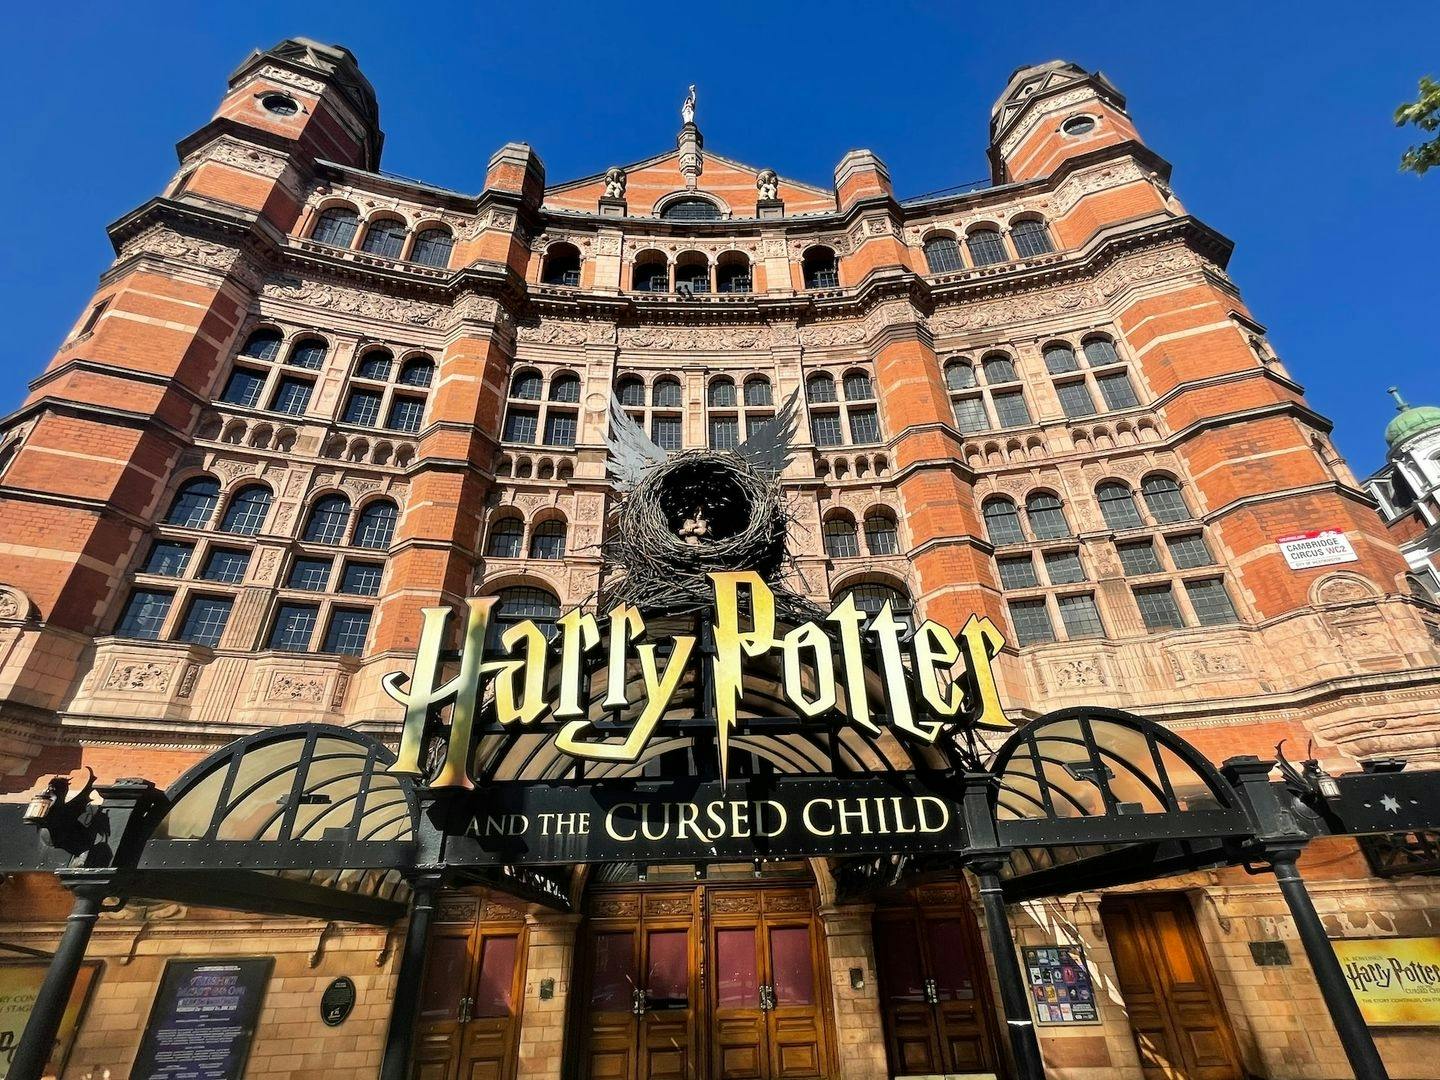 Excursão a pé autoguiada com tema de Harry Potter em Londres em um aplicativo móvel